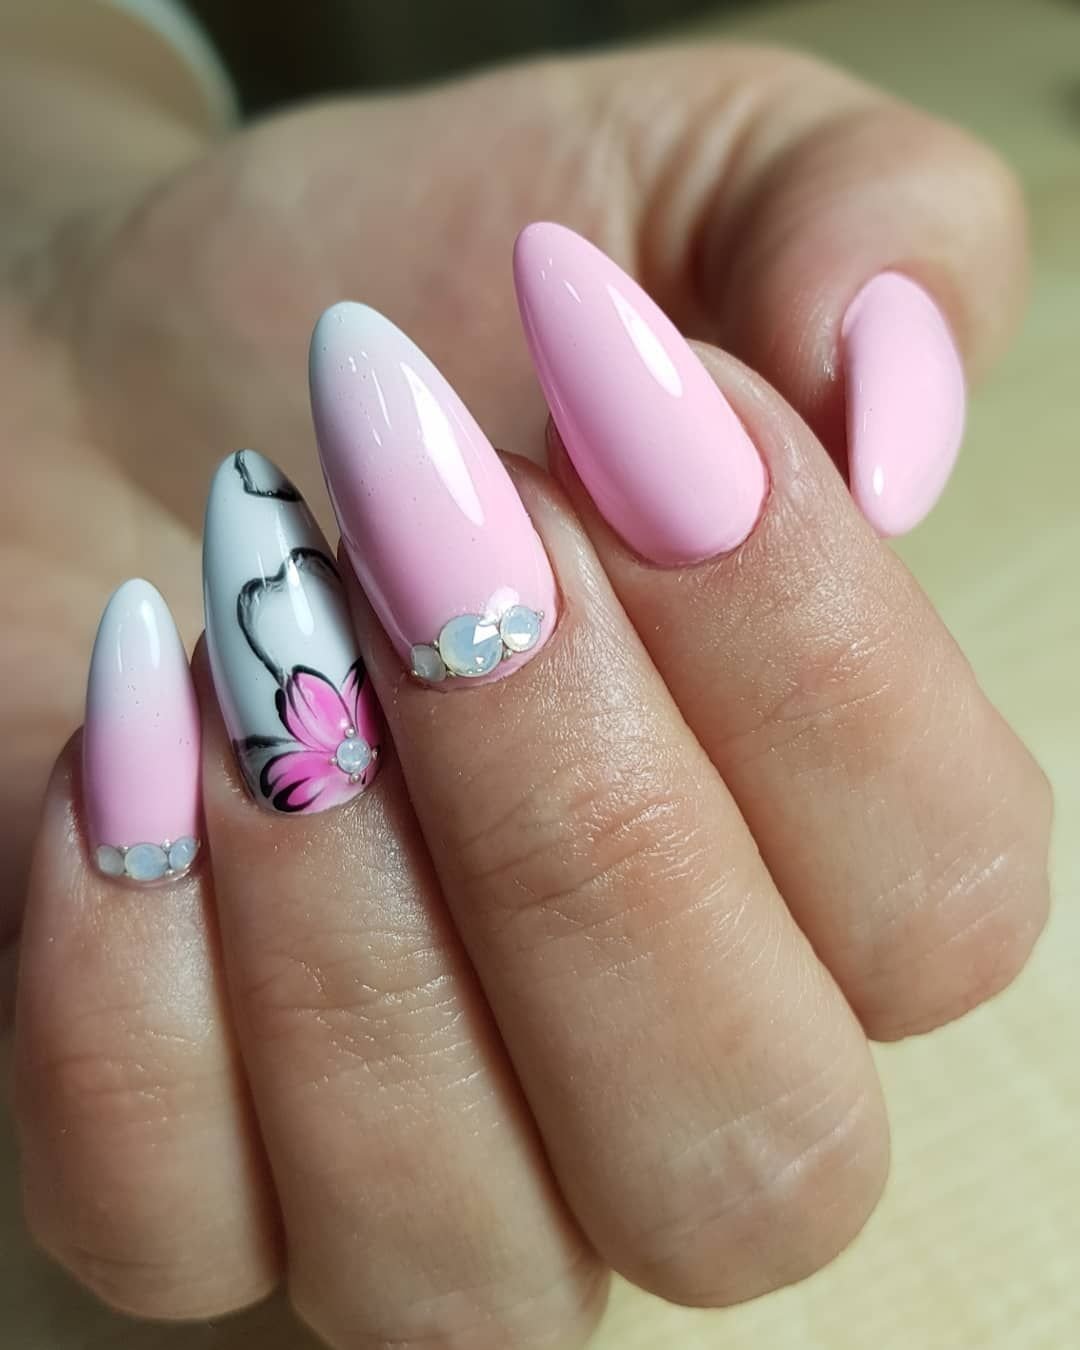 Ногти весенние нежные фото. Розовые ногти. Р̸о̸з̸о̸в̸ы̸й̸ м̸а̸н̸и̸к̸. Нежно розовые ногти. Шикарные ногти.